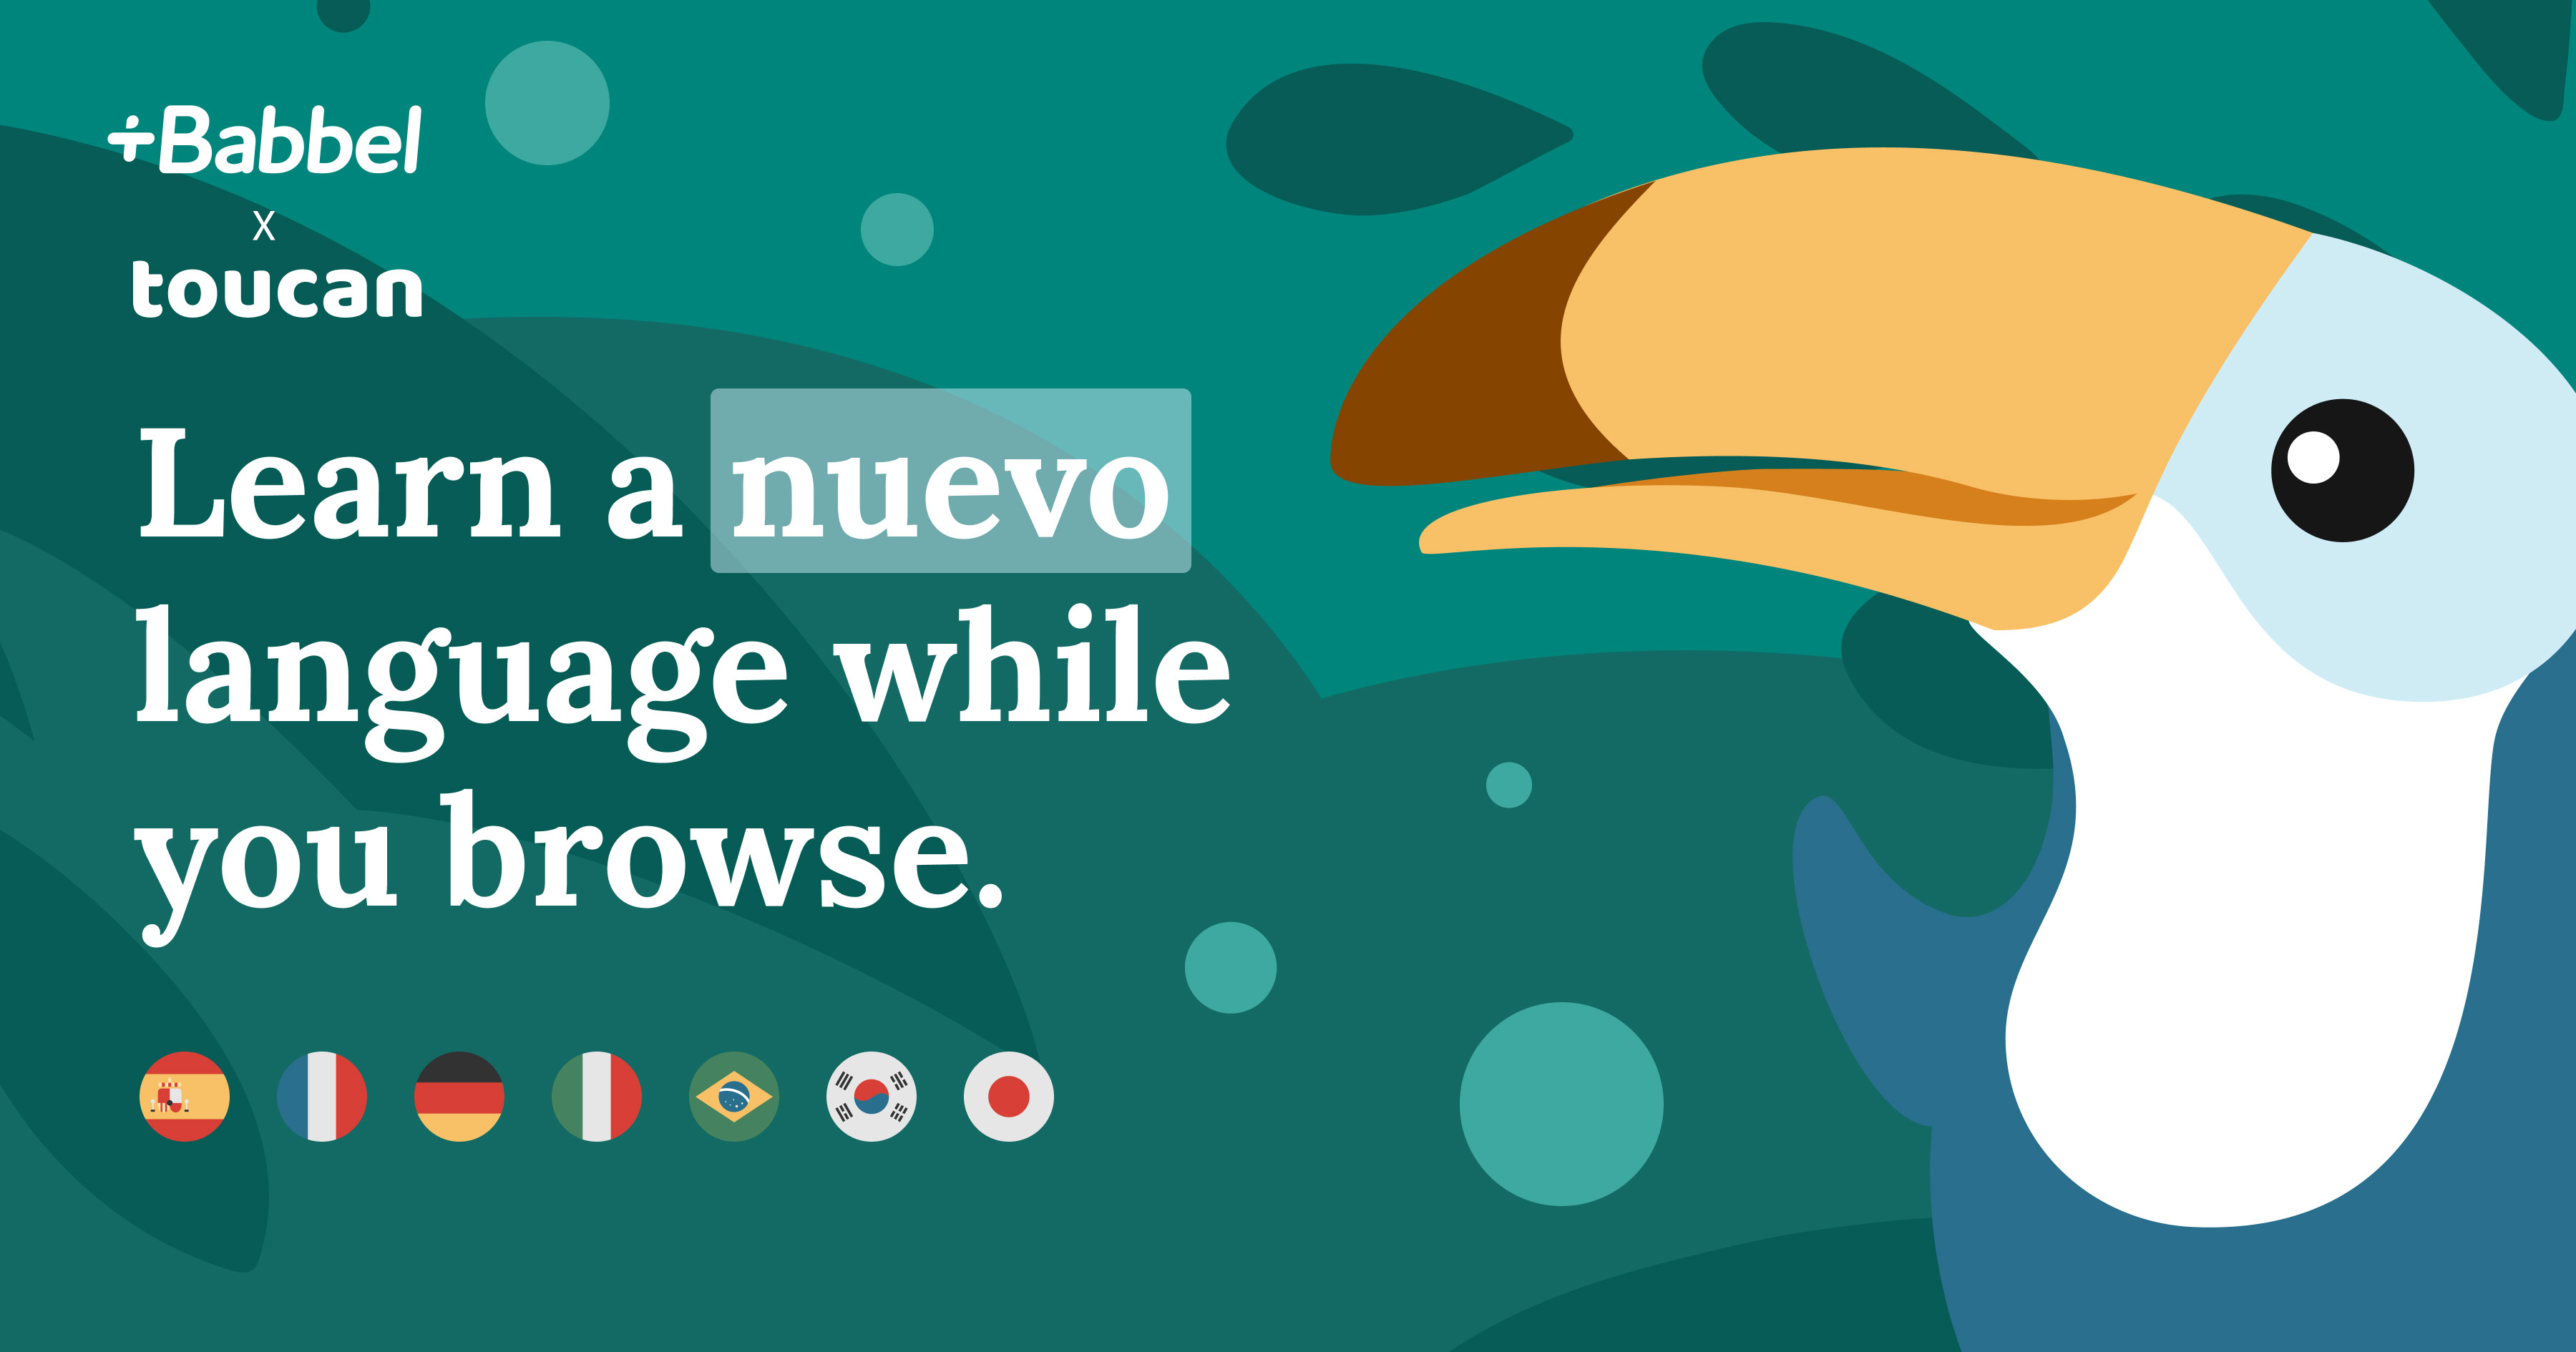 Sprachen lernen beim Surfen  – Babbel integriert Browser-Erweiterung Toucan